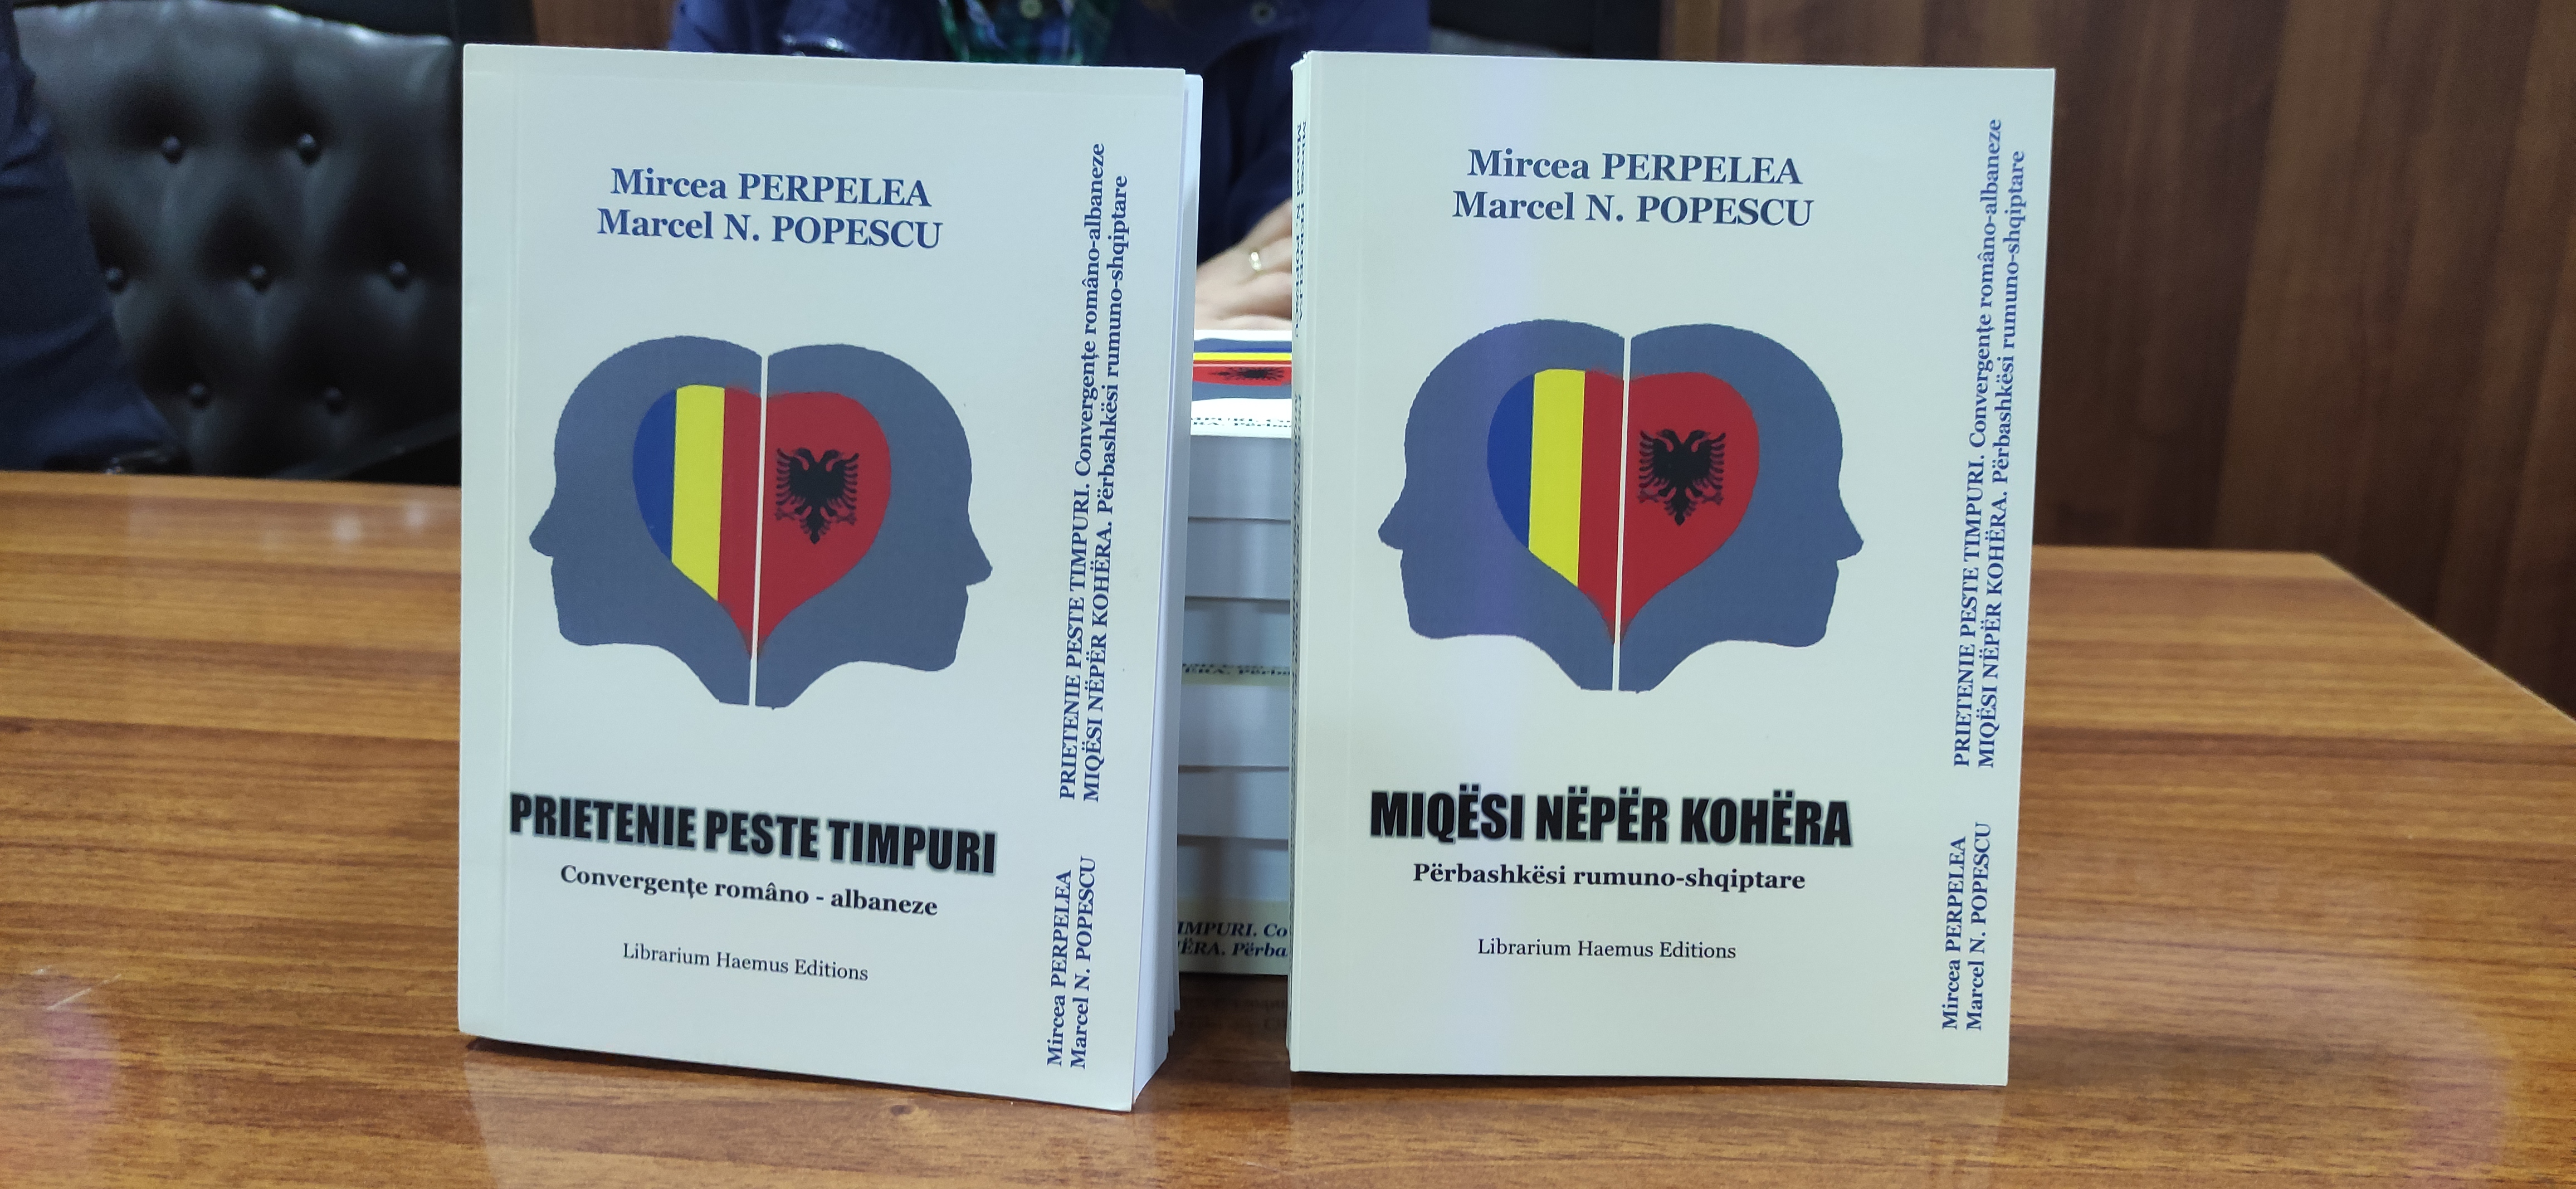 Amabasadori Rumun viziton dhe promovon librin në Pogradec